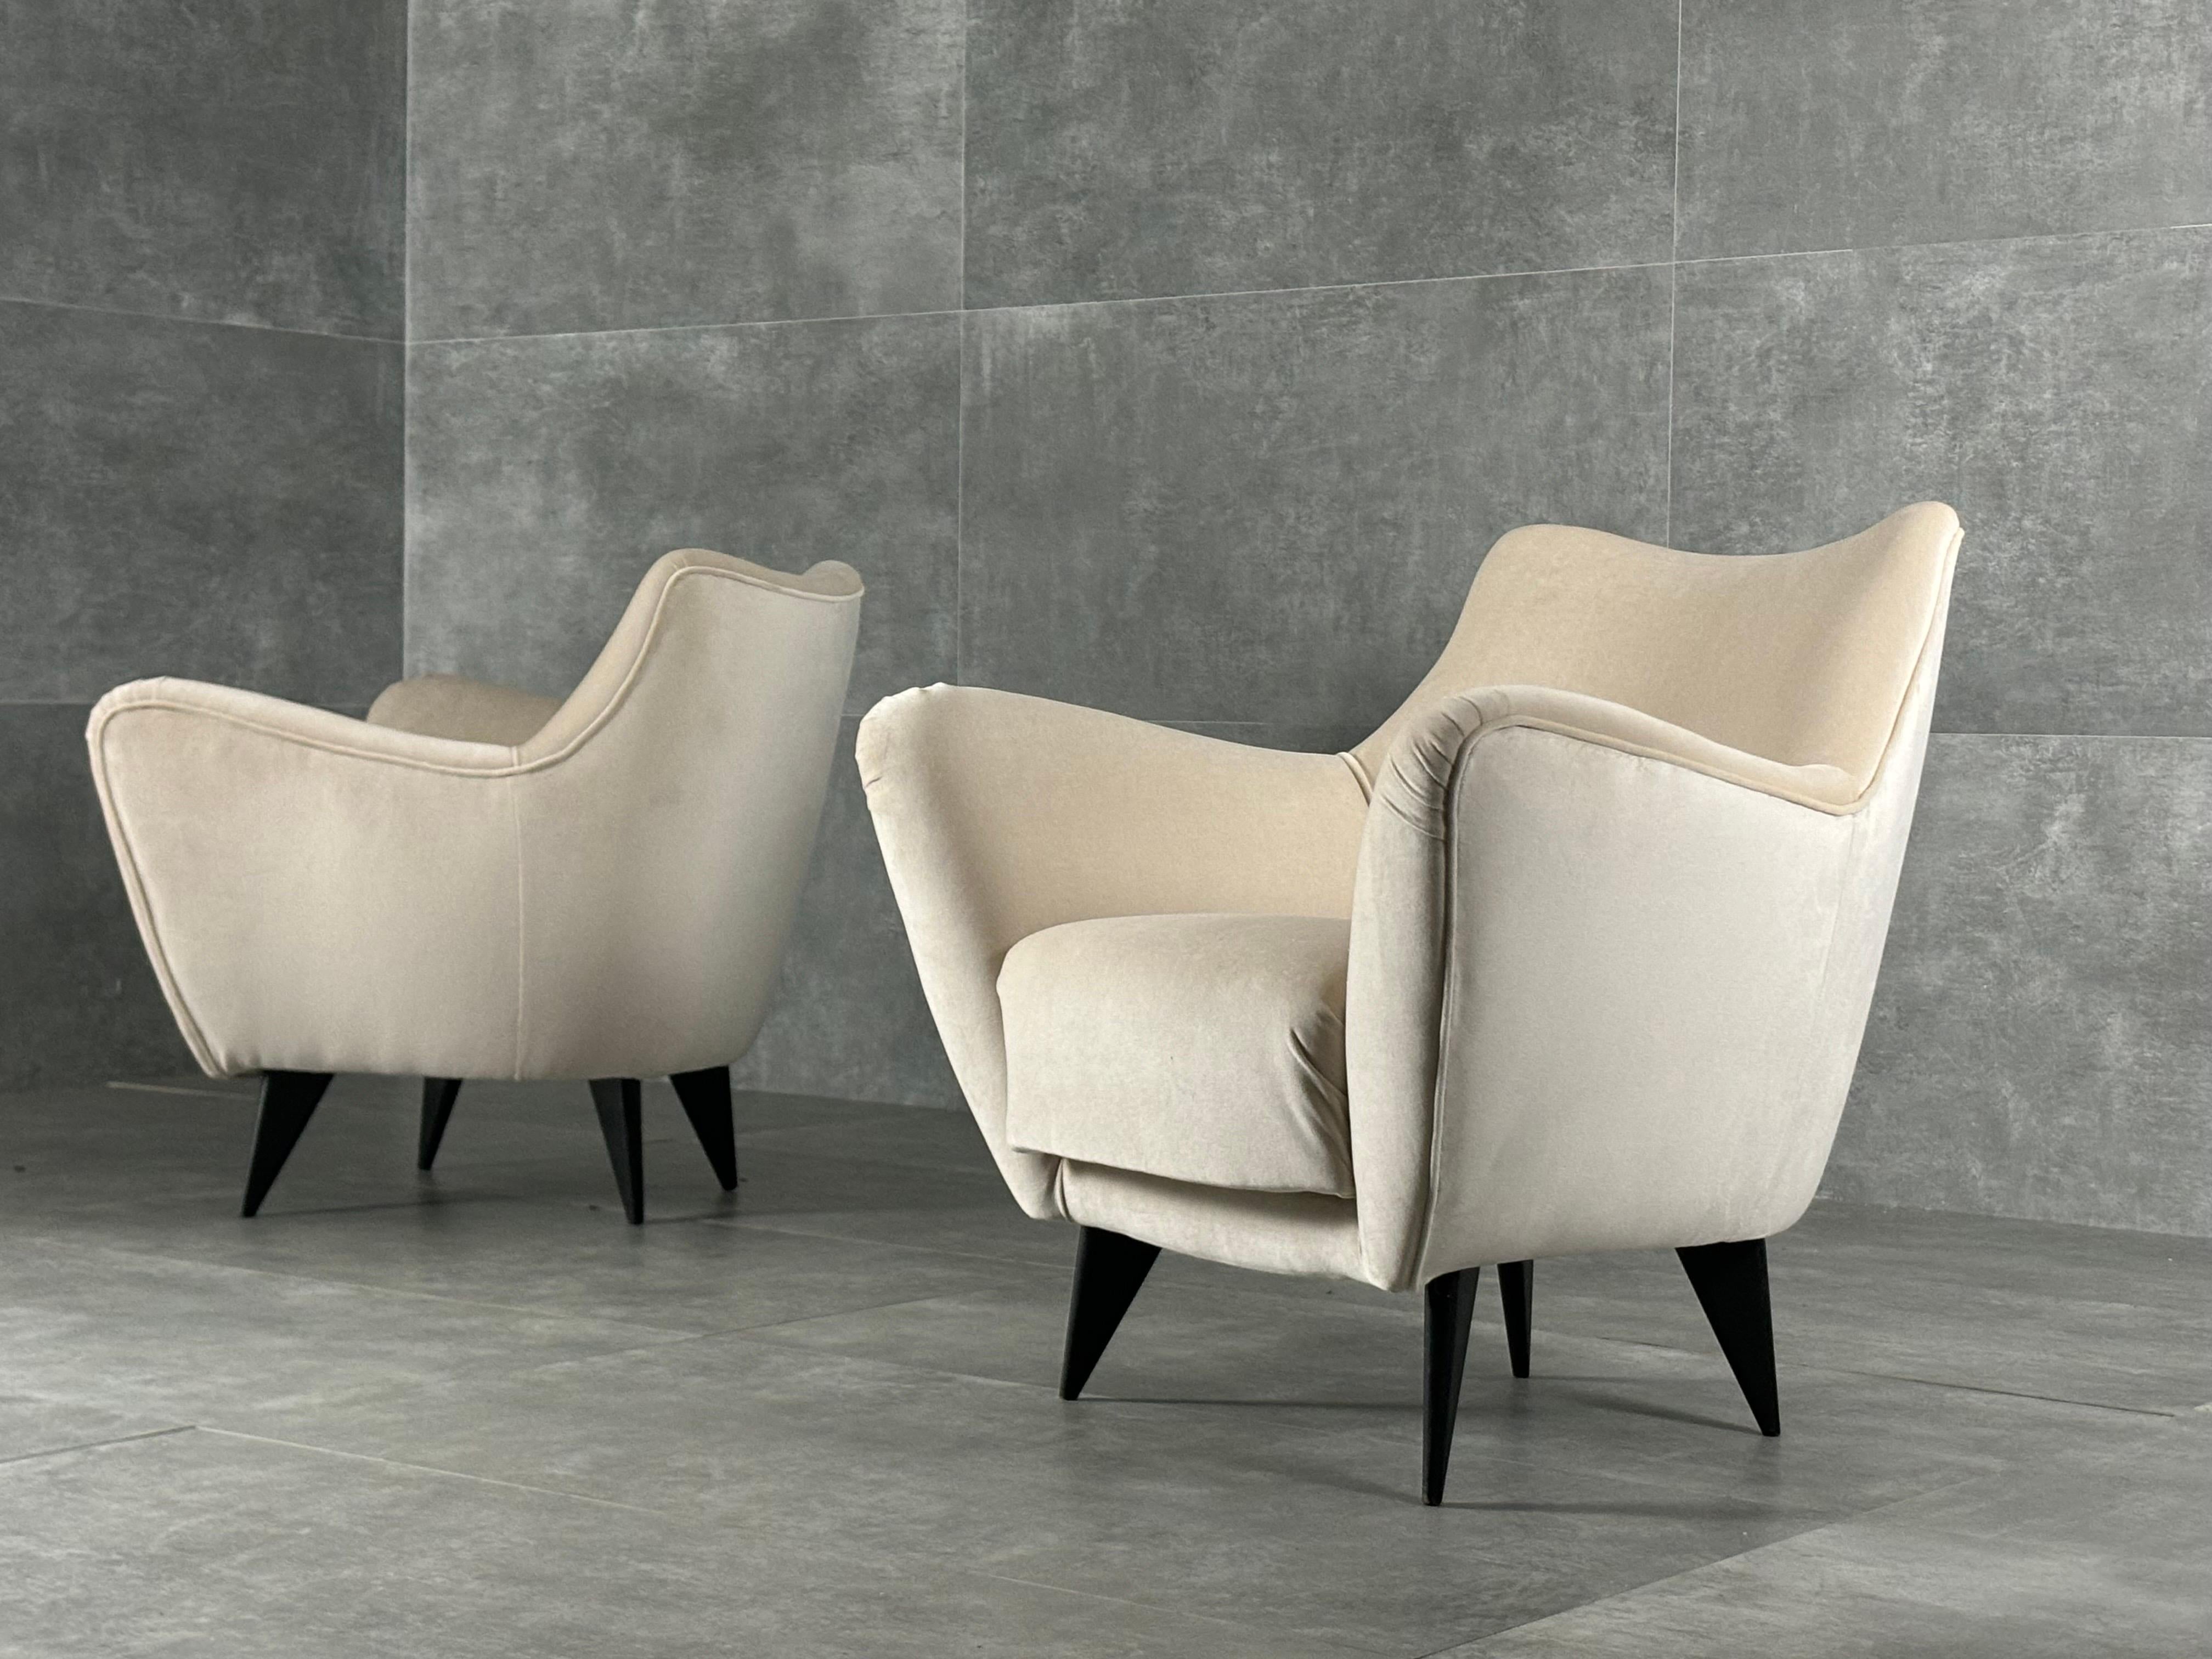 Sessel von Guglielmo Veronesi für ISA Bergamo, Italien, 1950er Jahre. Diese Sessel sind neu mit elfenbeinfarbenem Samt gepolstert.